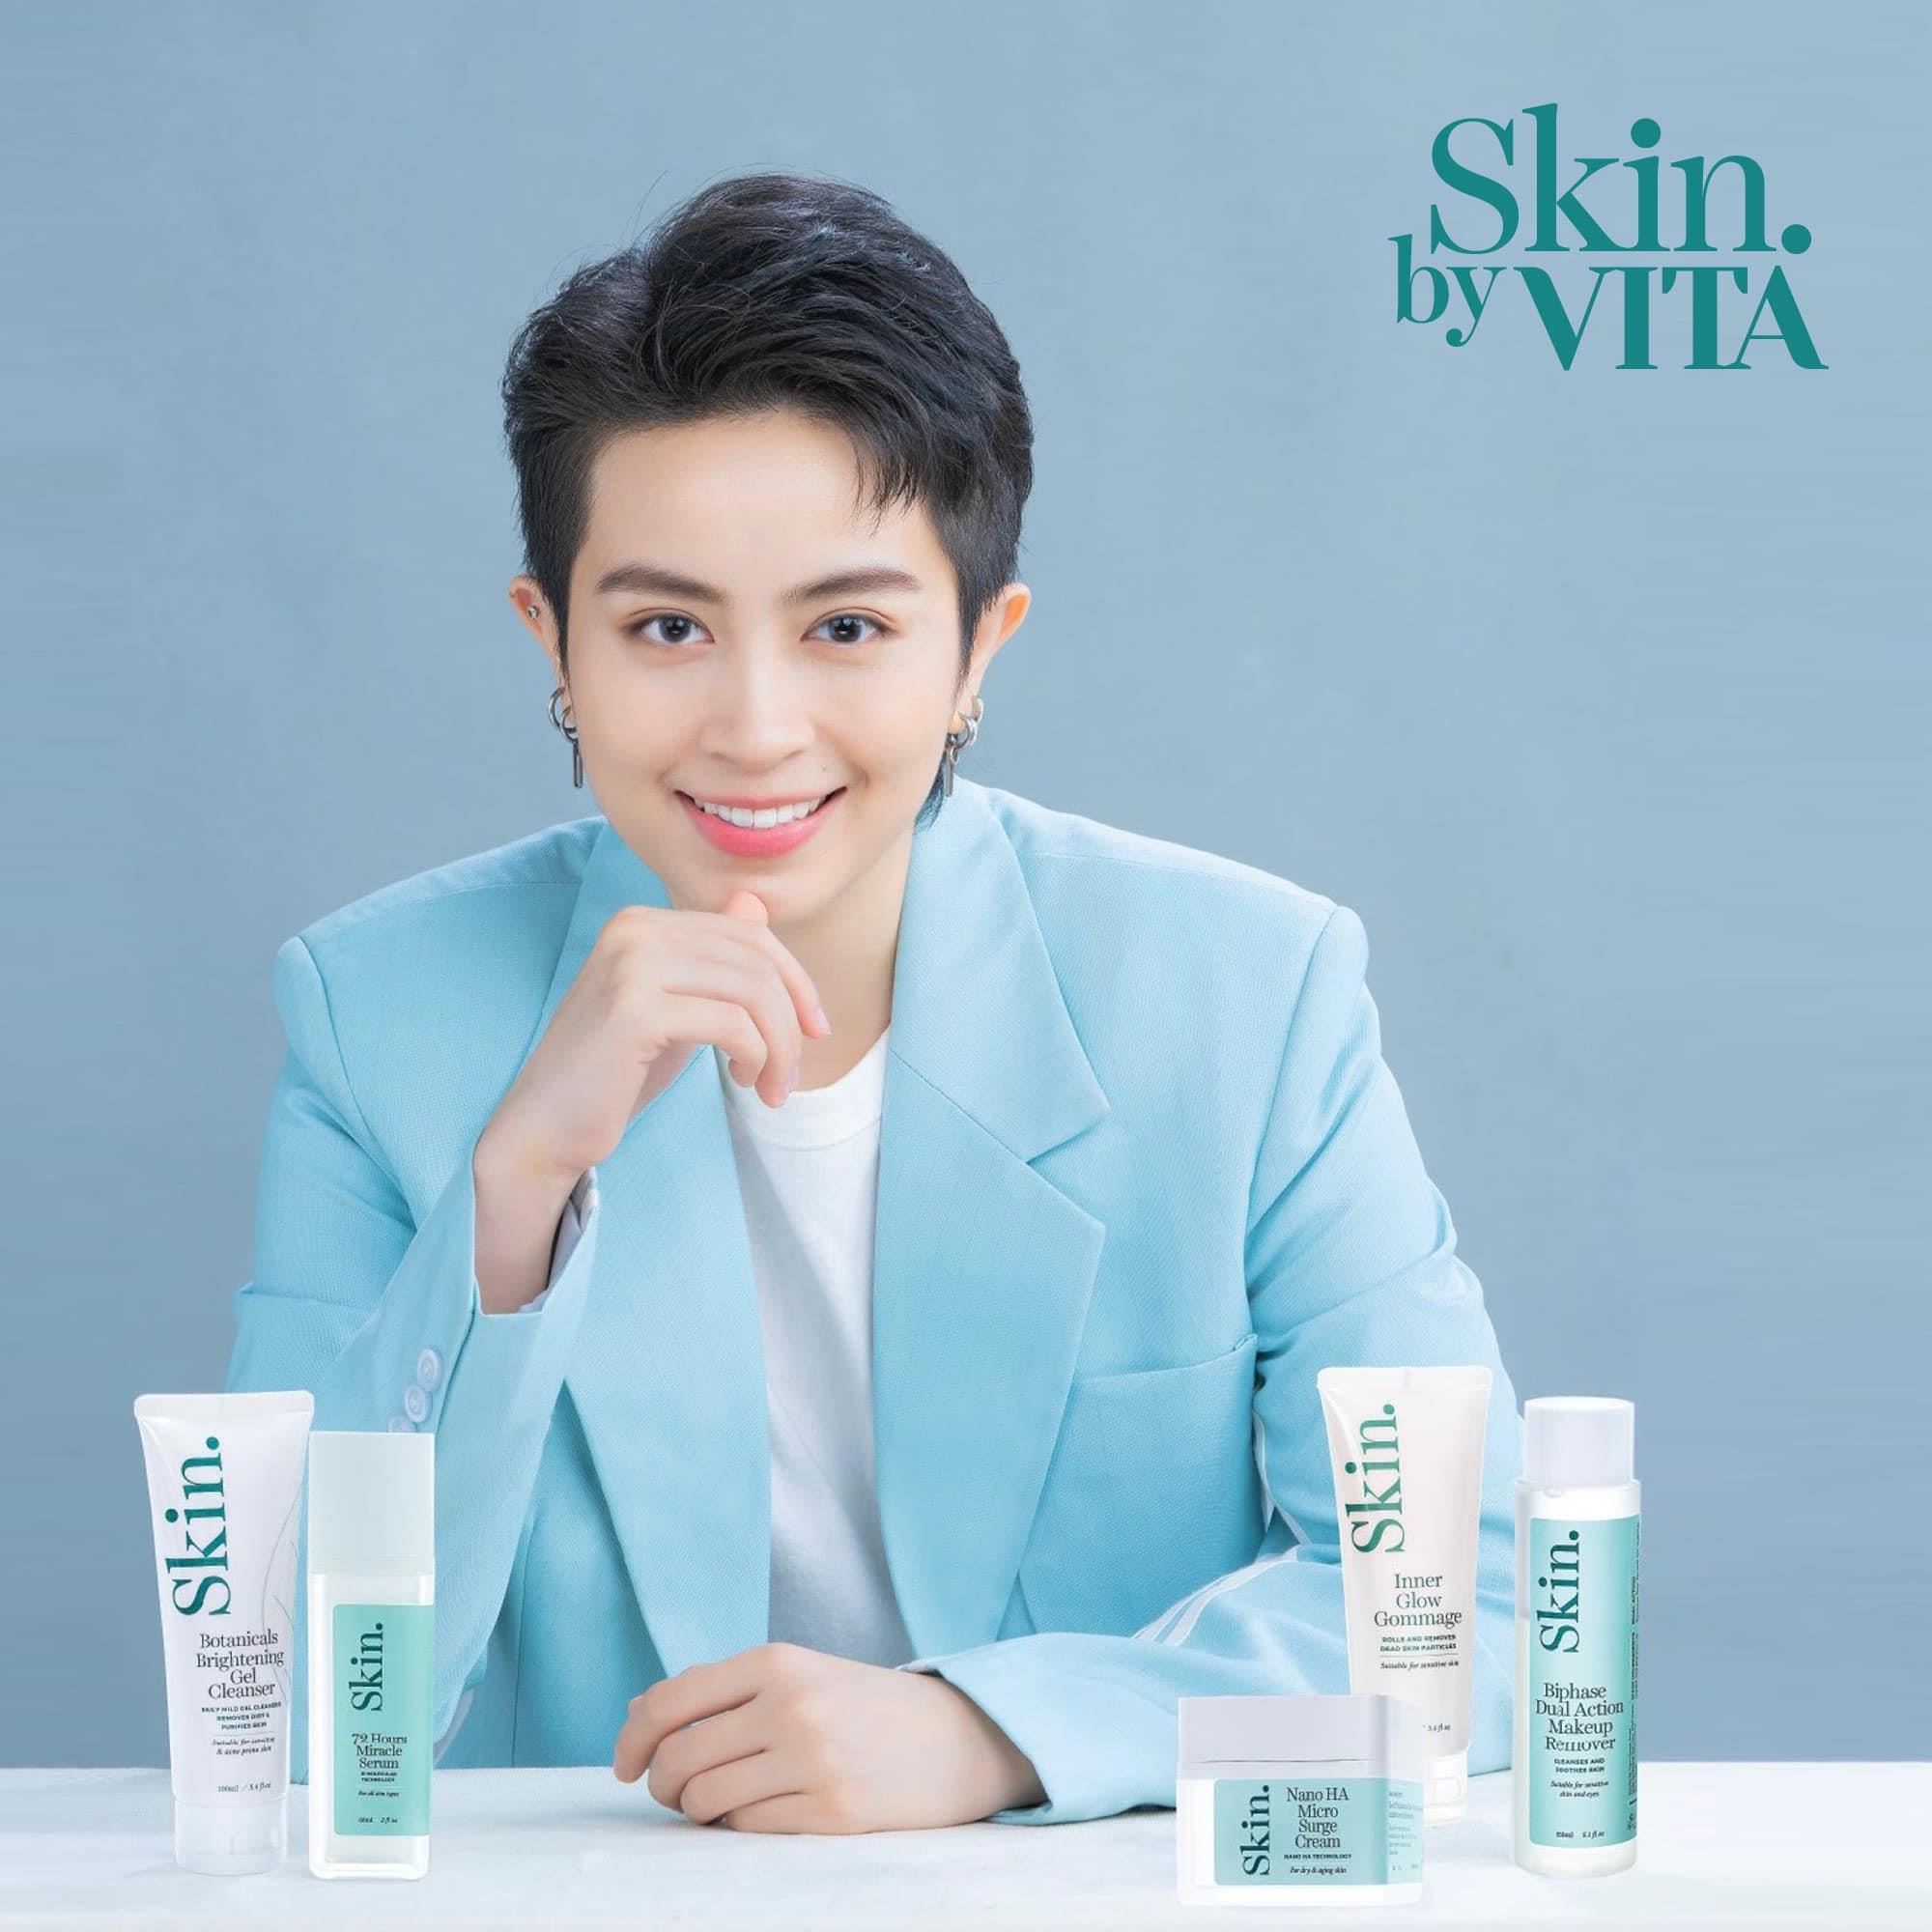 Skin by Vita - Bộ mỹ phẩm thiên nhiên Châu Âu cao cấp thiết kế riêng cho làn da Việt - Ảnh 7.